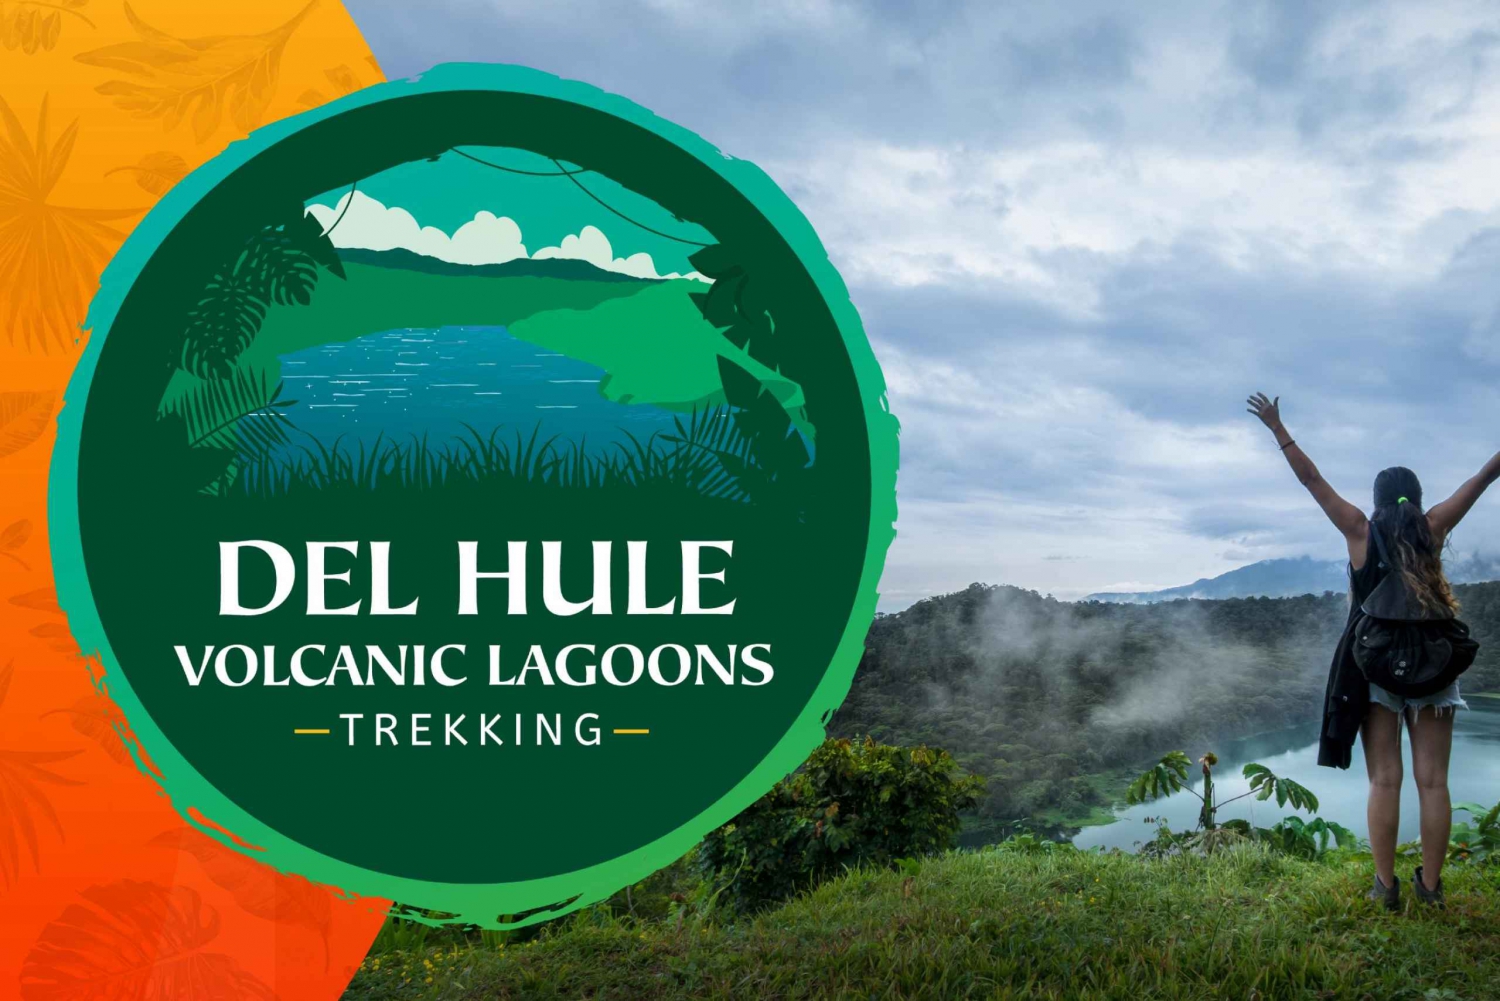 La Fortuna: trekking per piccoli gruppi nel cratere vulcanico della laguna di Hule